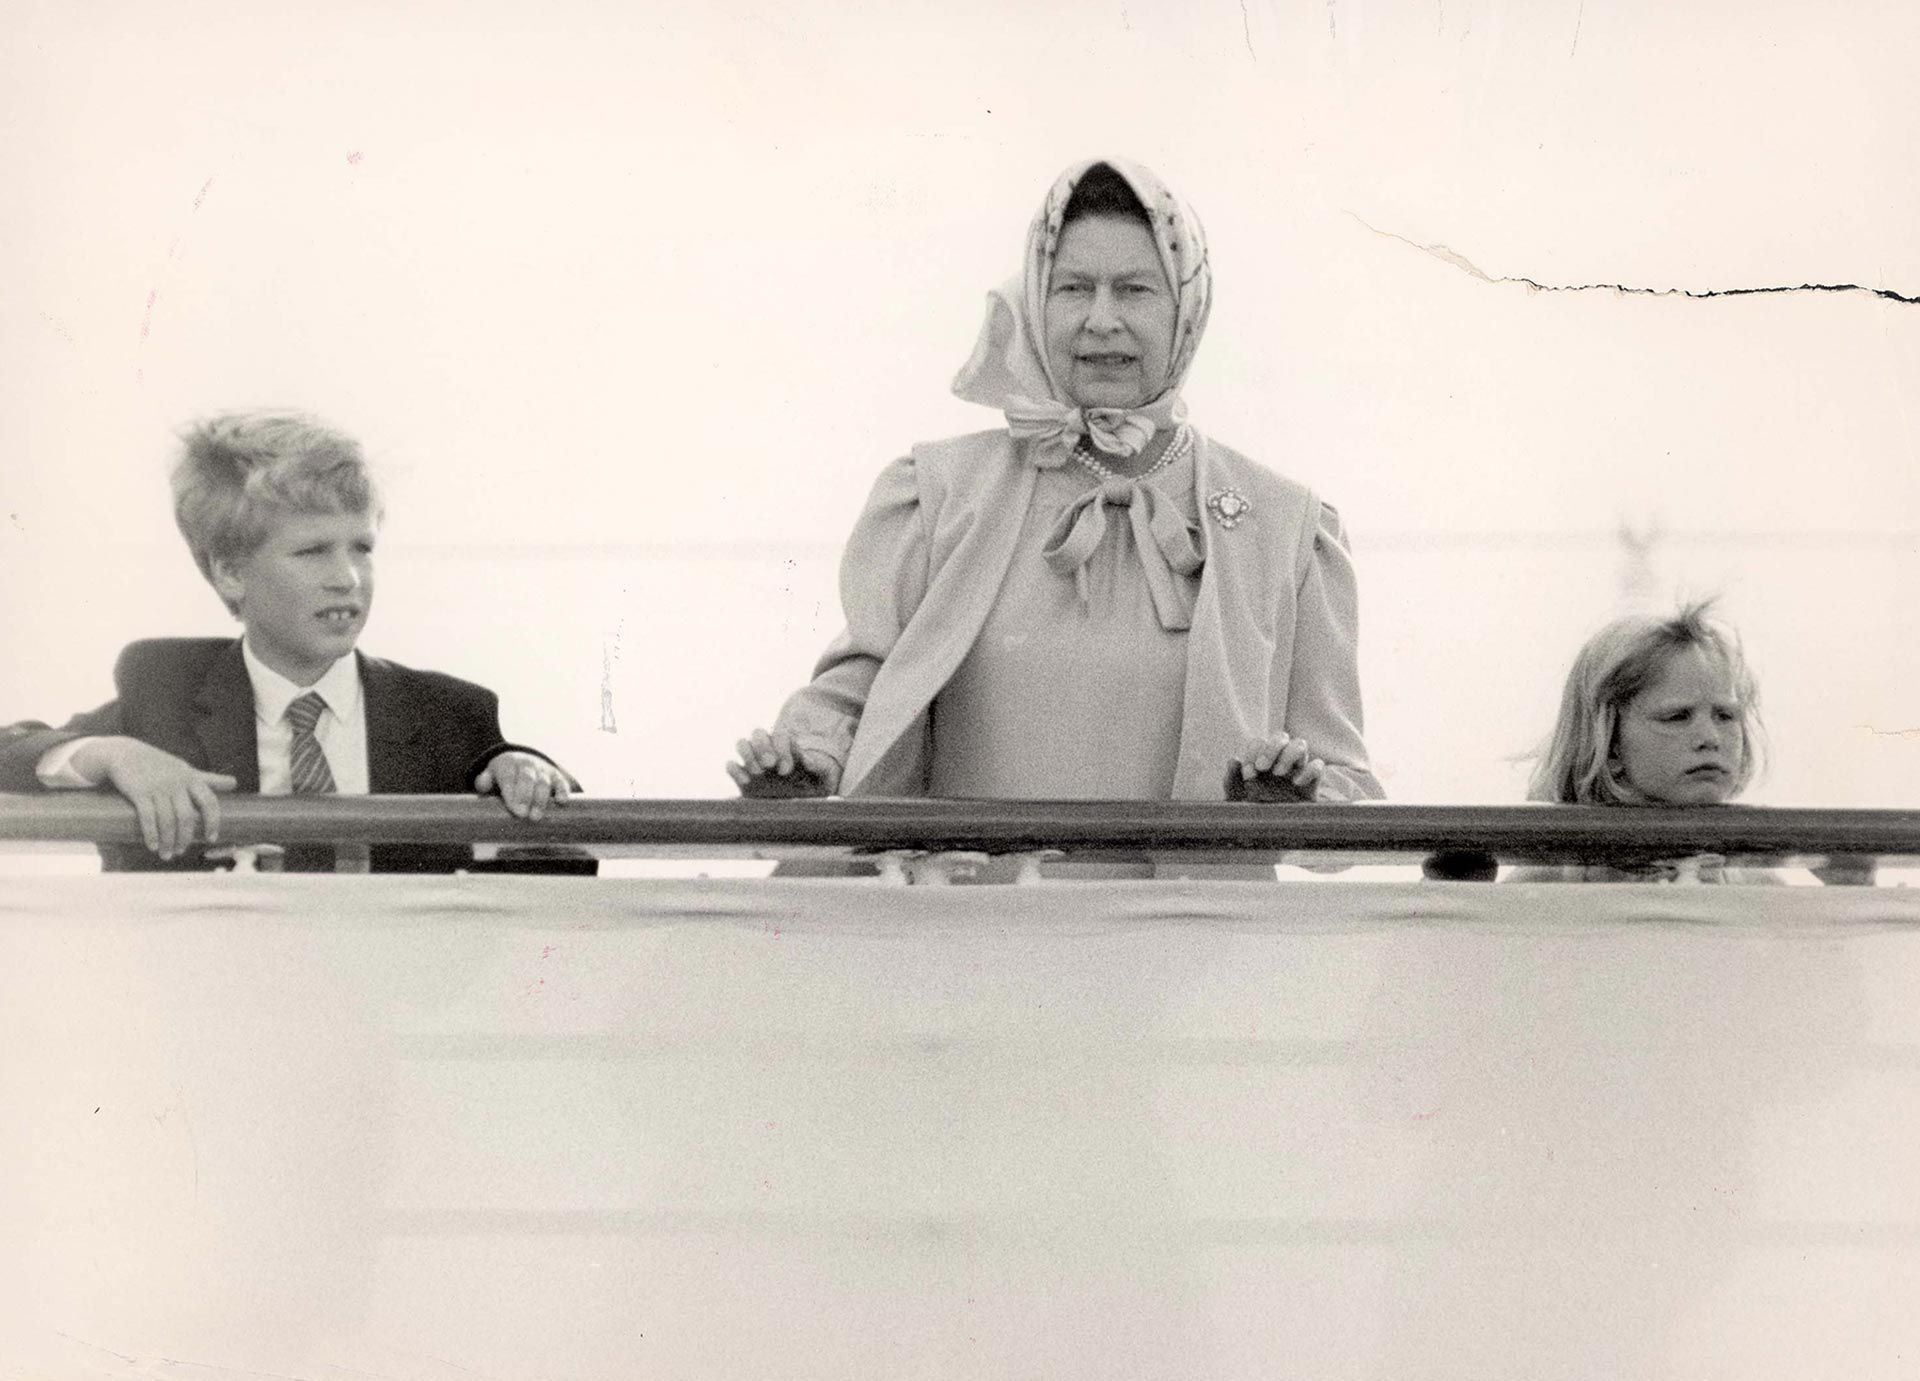 Agosto, 1986 . La reina Isabel II con sus nietos Zara y Peter Phillips en su palacio de Balmoral, Escocia